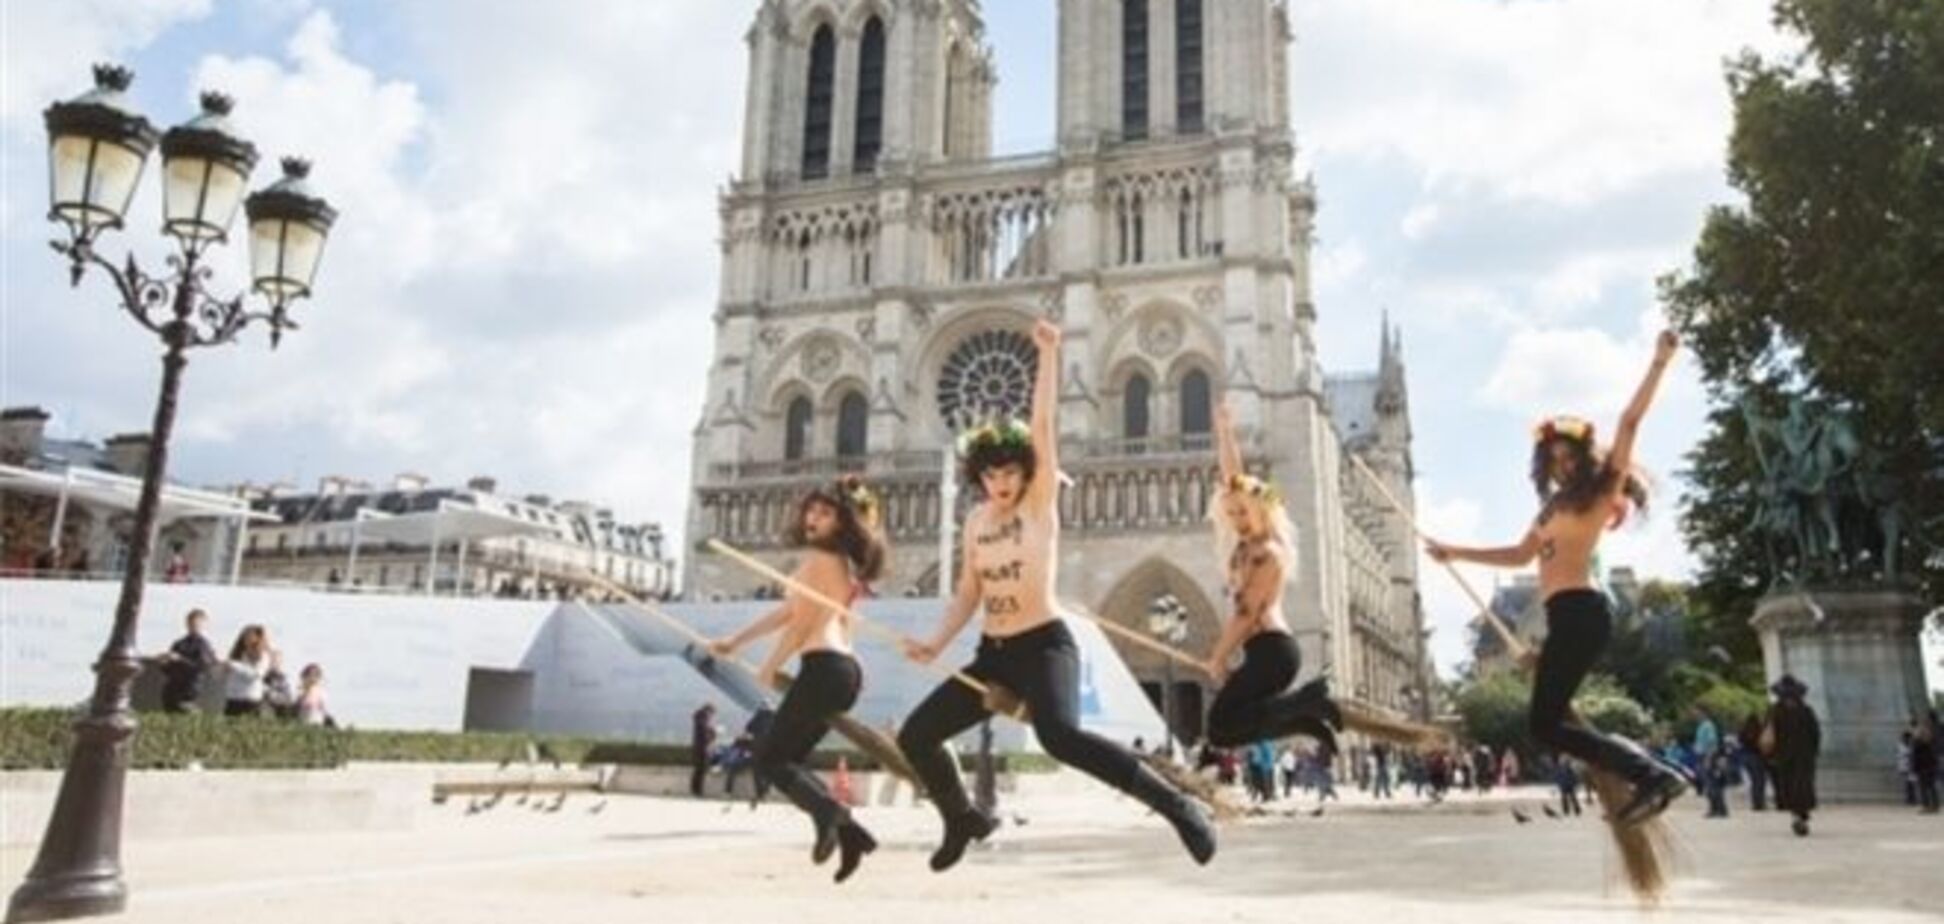 FEMENисткам за колокольный звон в Нотр-Дам де Пари  грозит до 10 лет тюрьмы